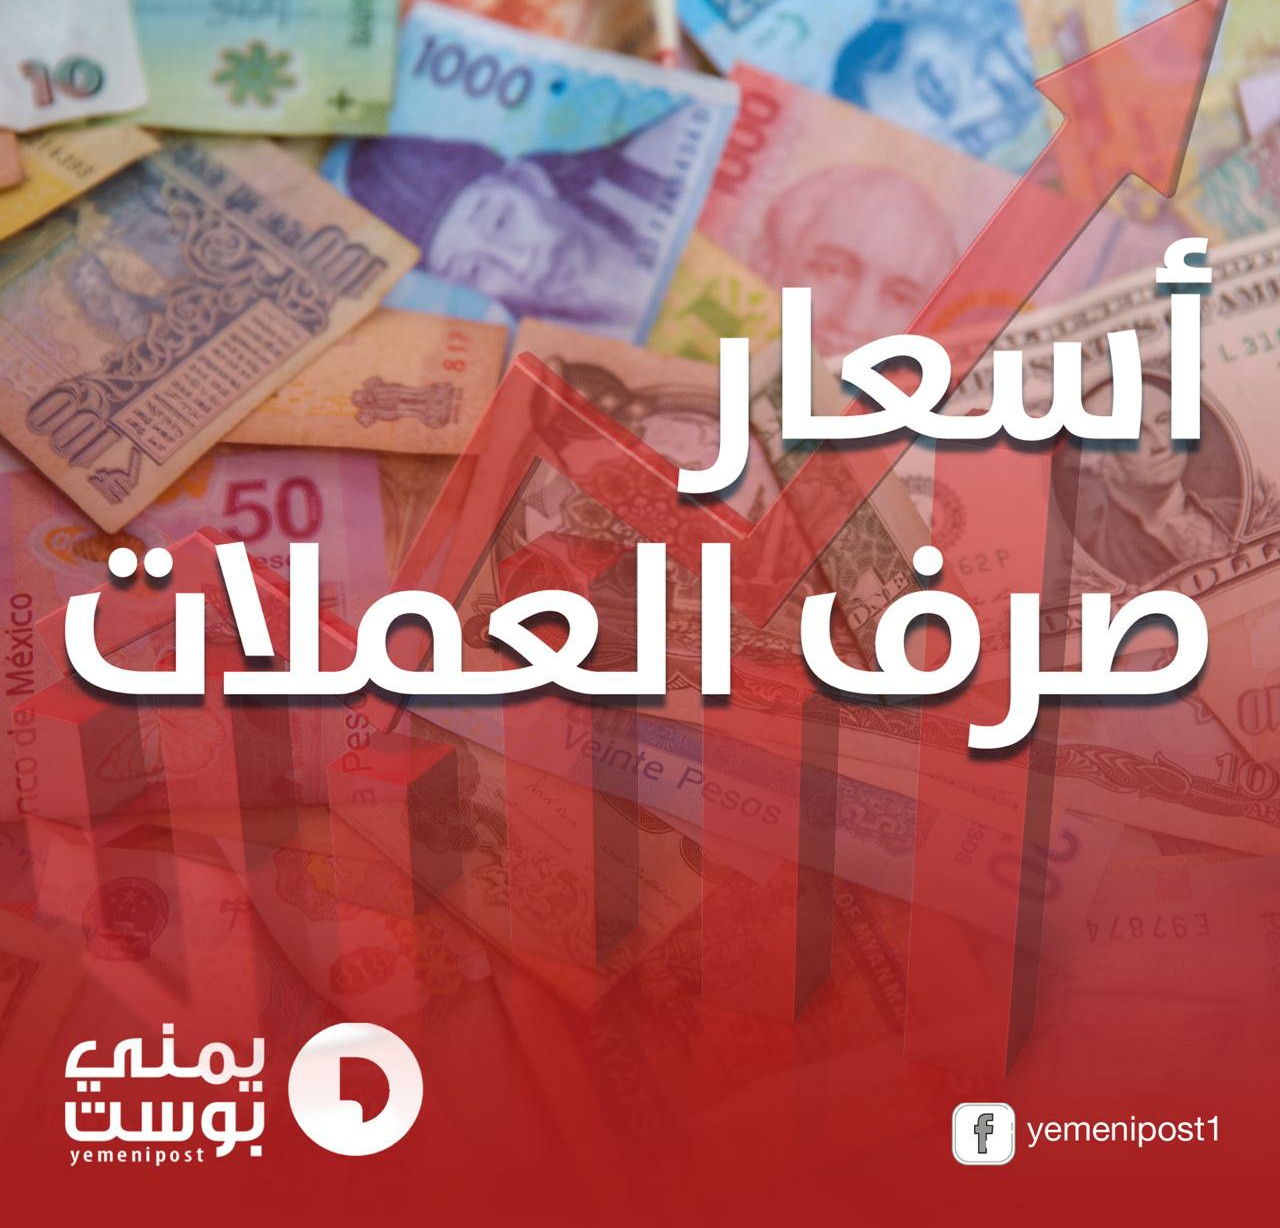 ”العملات الاجنبية” تنفذ هجمة مرتدة ضد ”الريال اليمني” بعد اتساع مكاسبه الايام الماضية